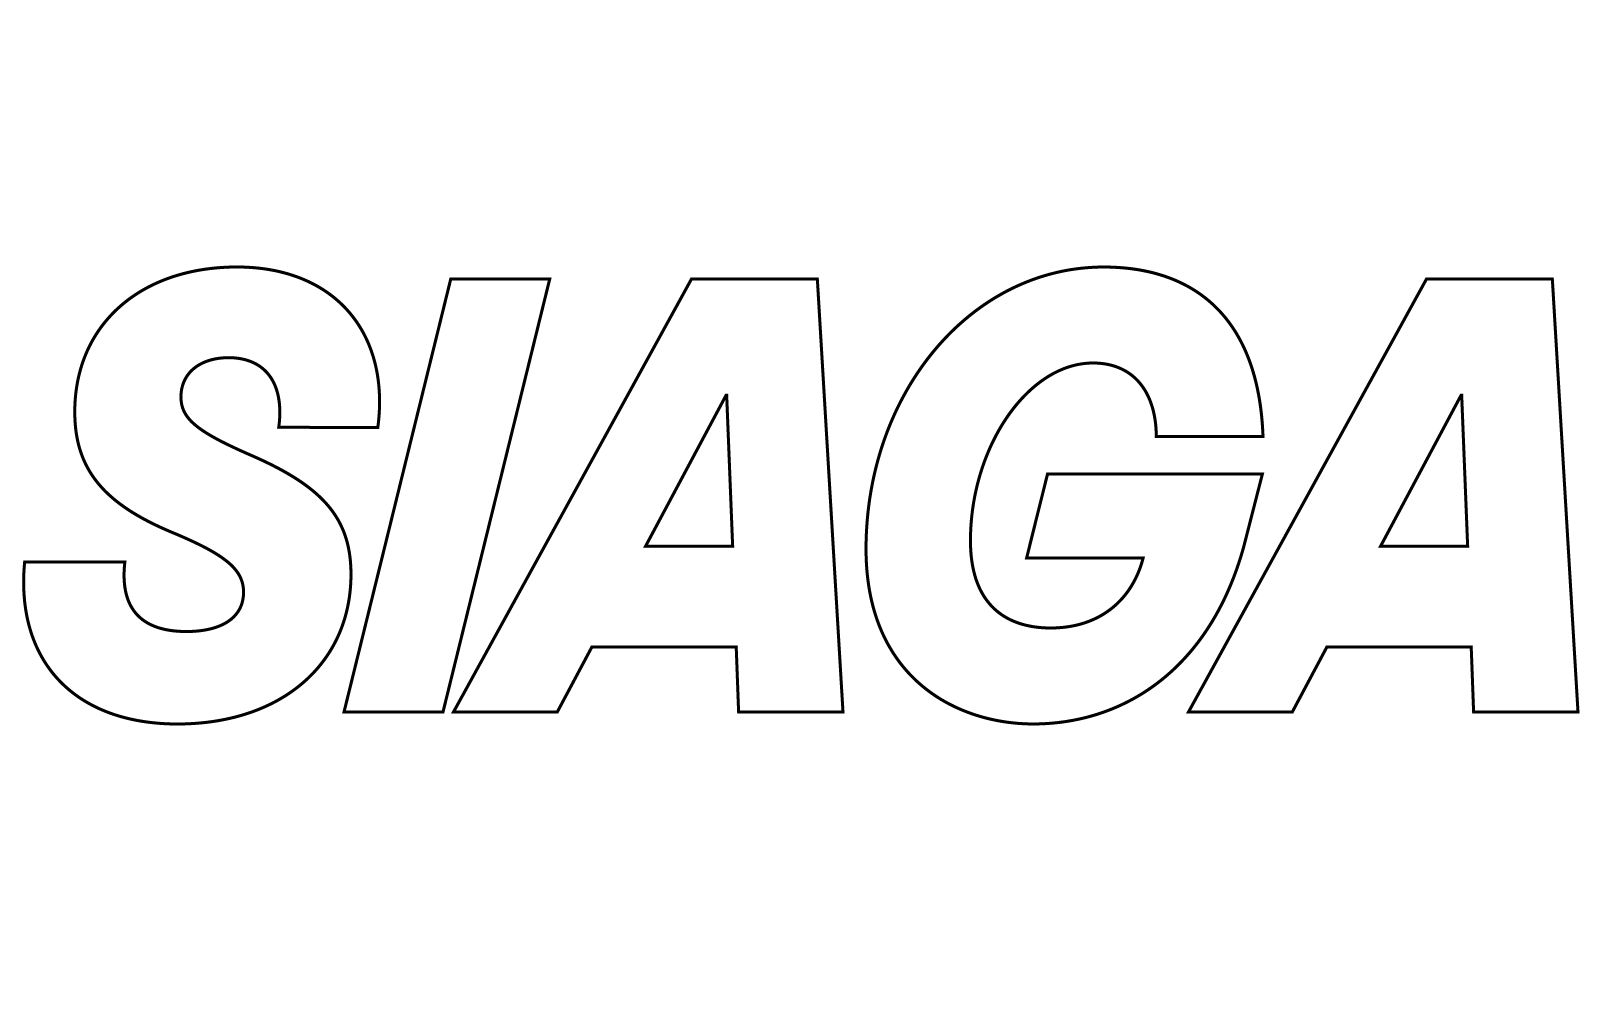 Siaga Typeface Collection 1